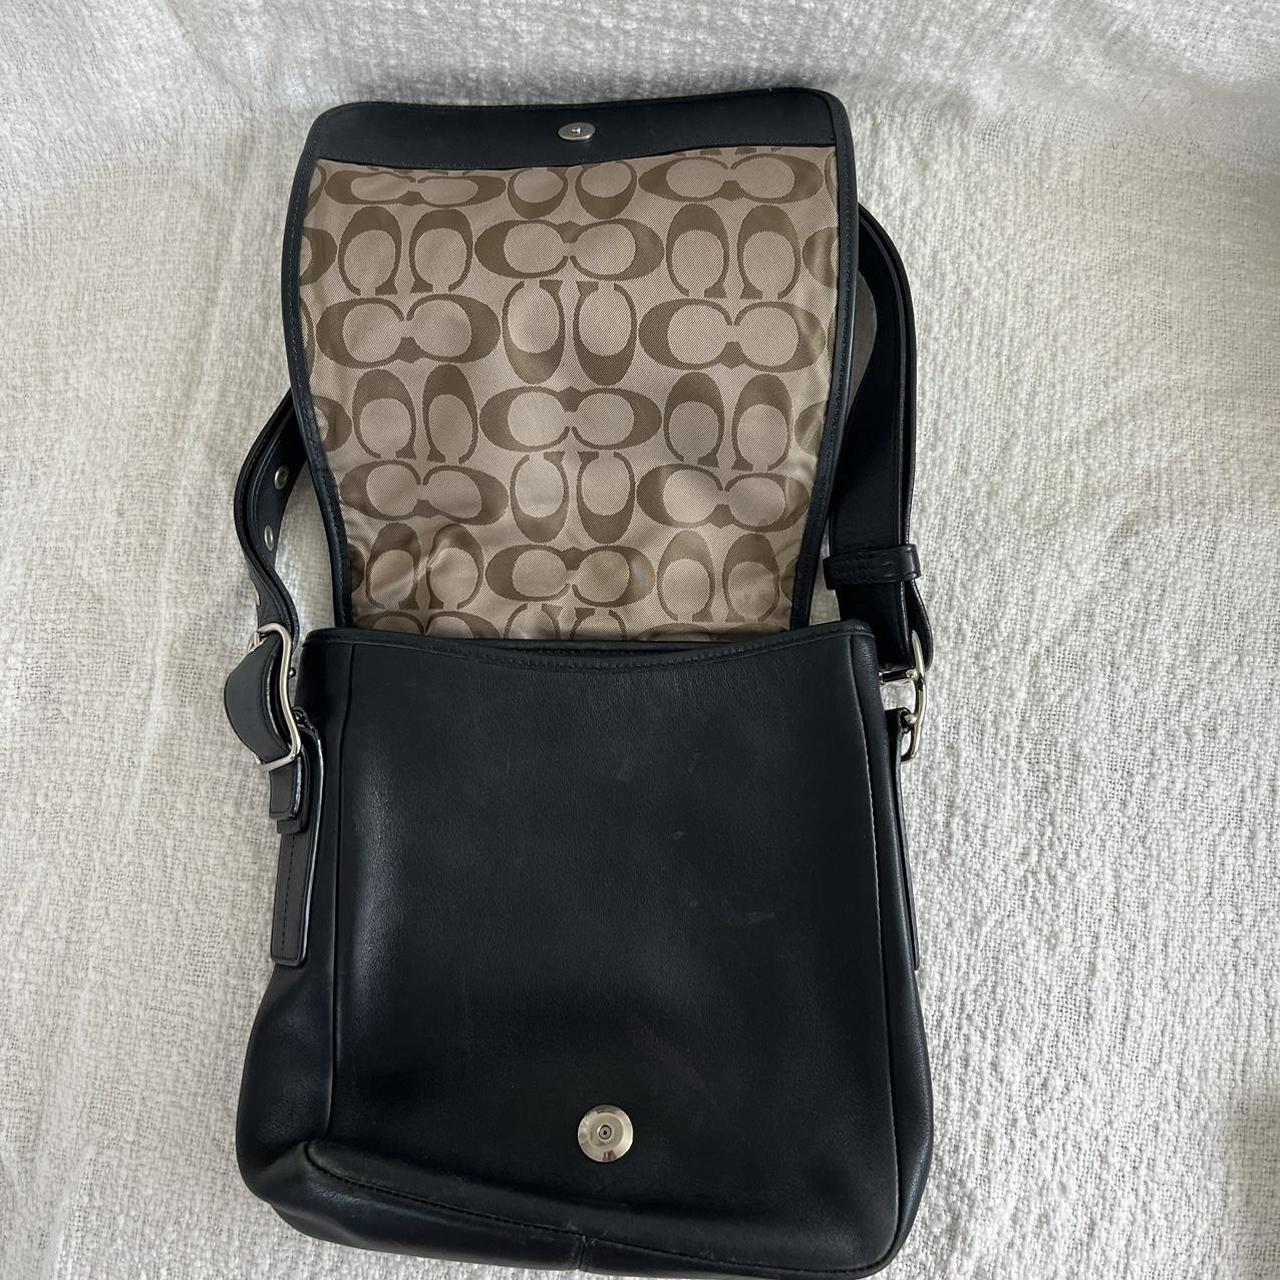 Vintage coach bag 🤎 With classic coach monogram - Depop